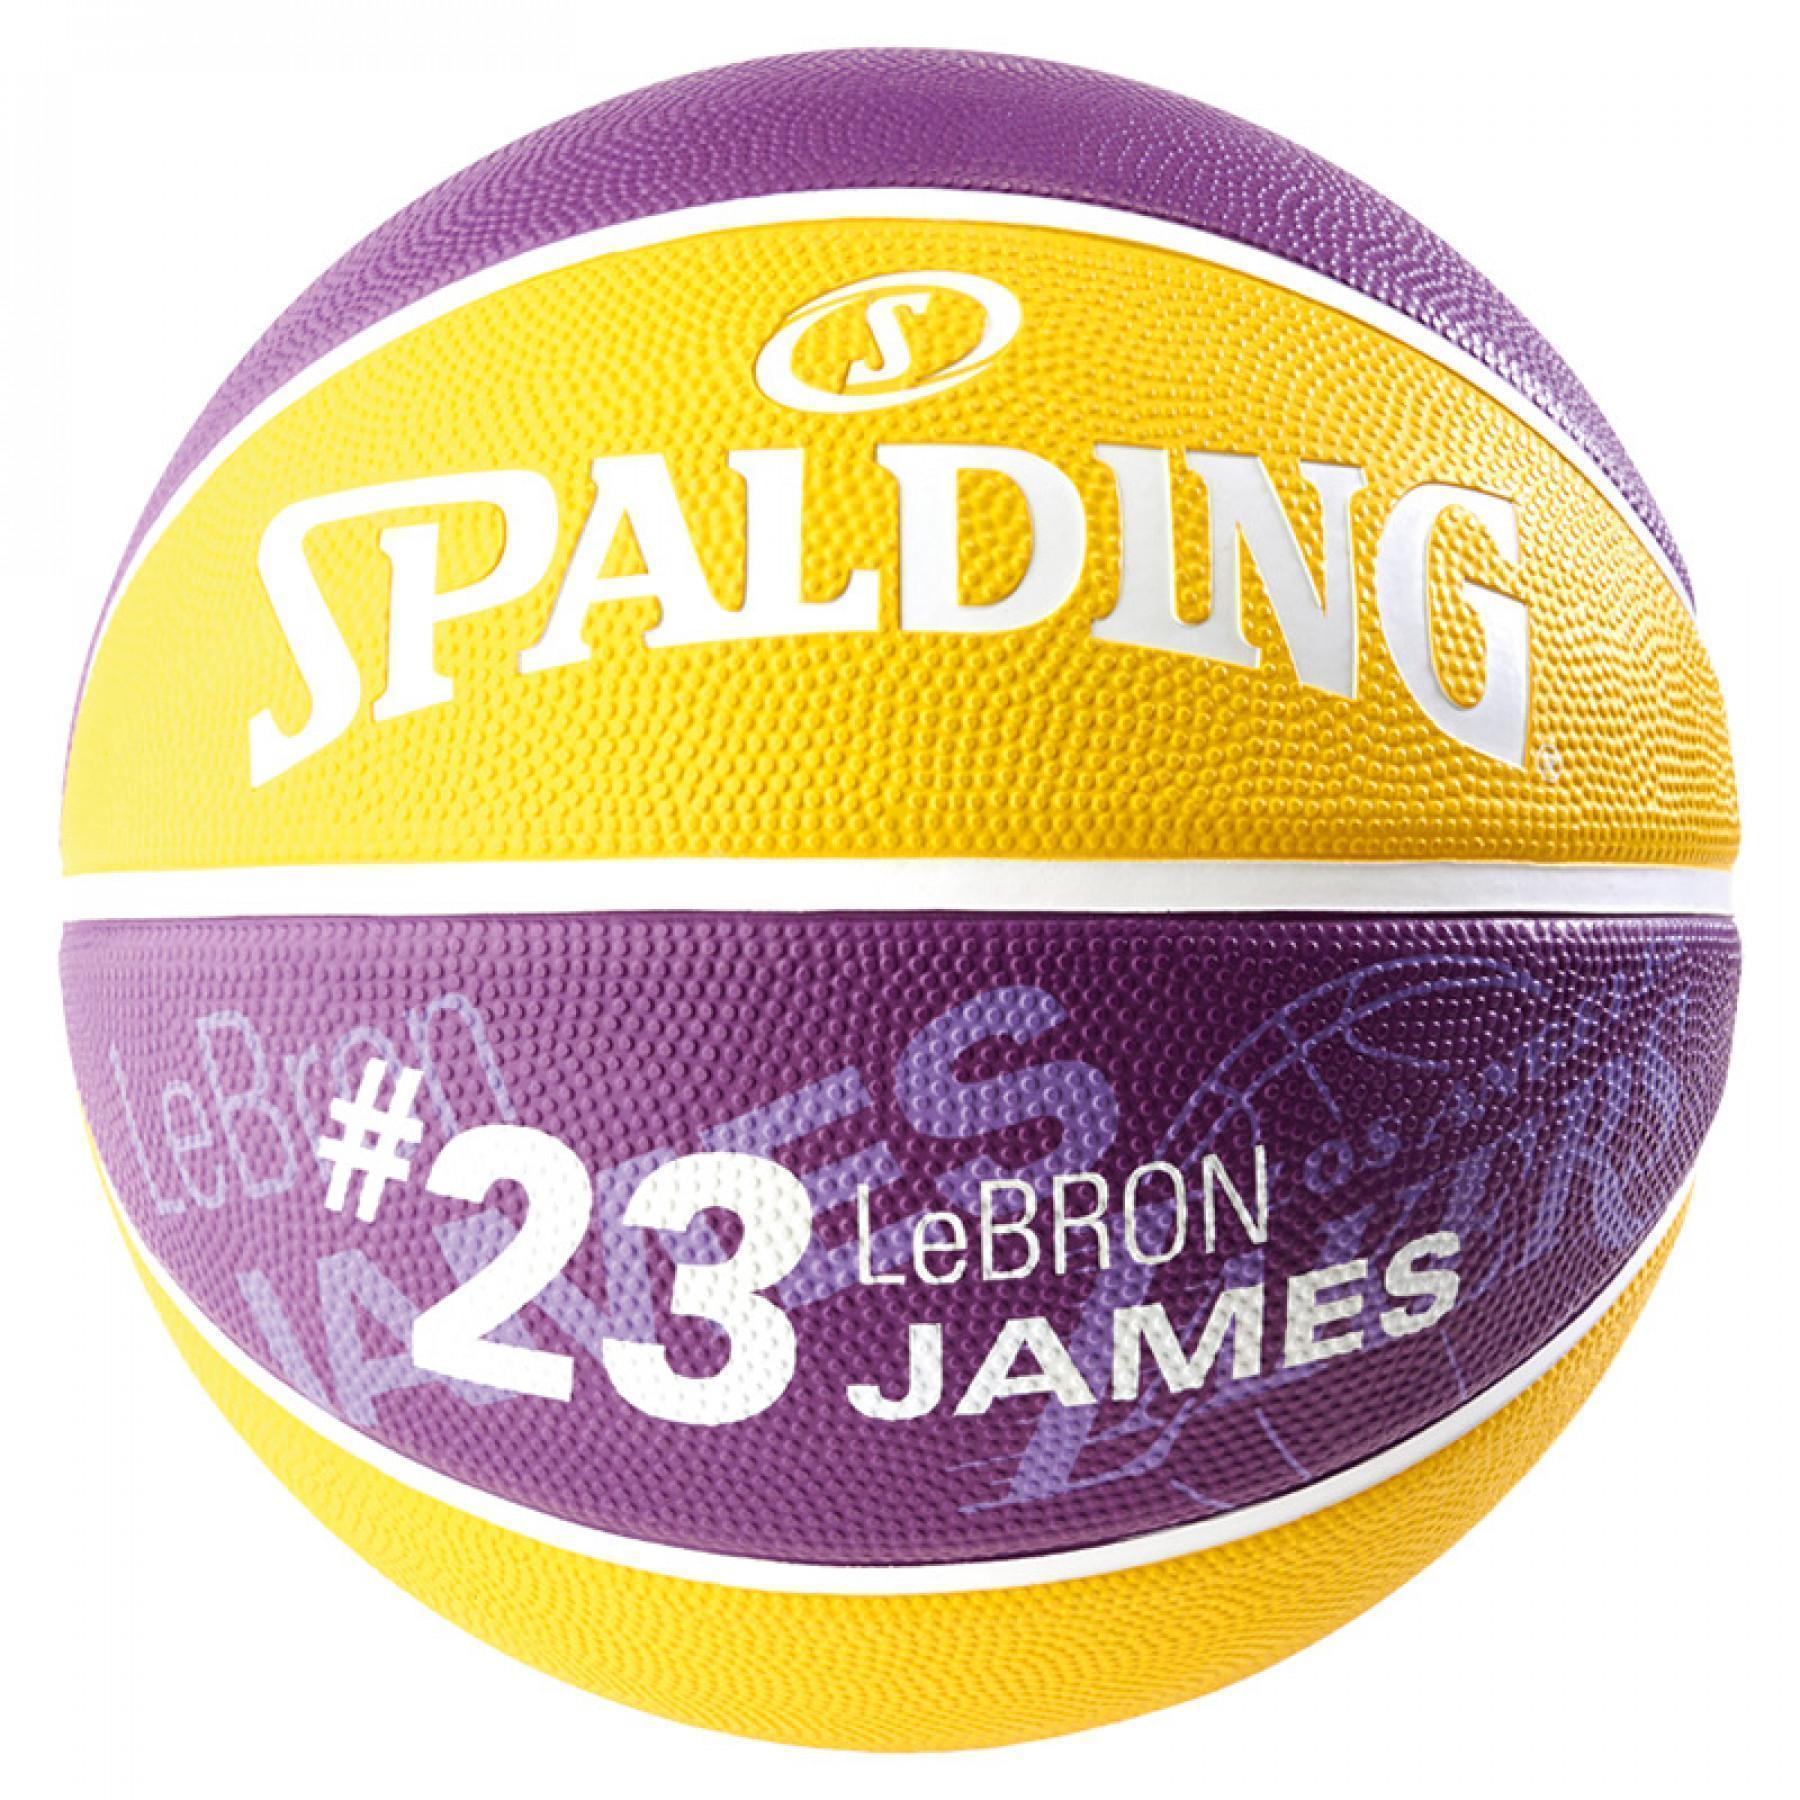 Balon Spalding NBA Player Lebron James (83-848z)